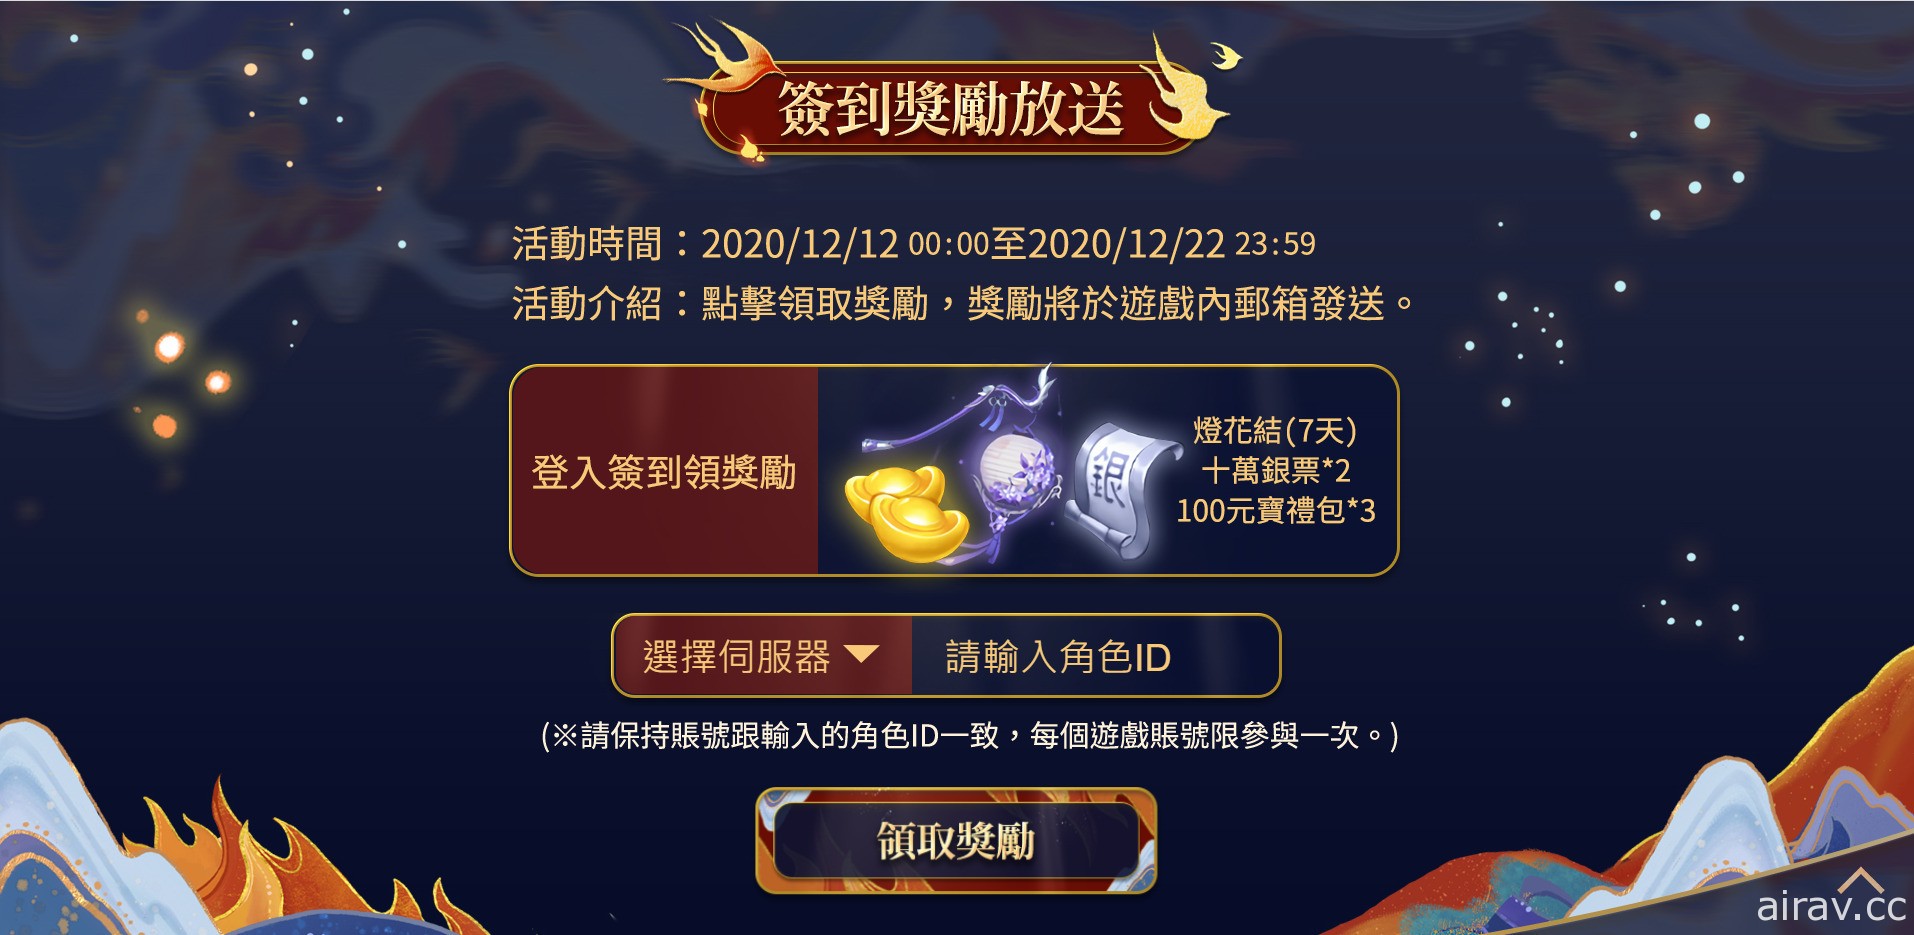 《倩女幽魂 2》歡慶週年 開放專屬「麒麟洞」副本並增添「杭州雪景」